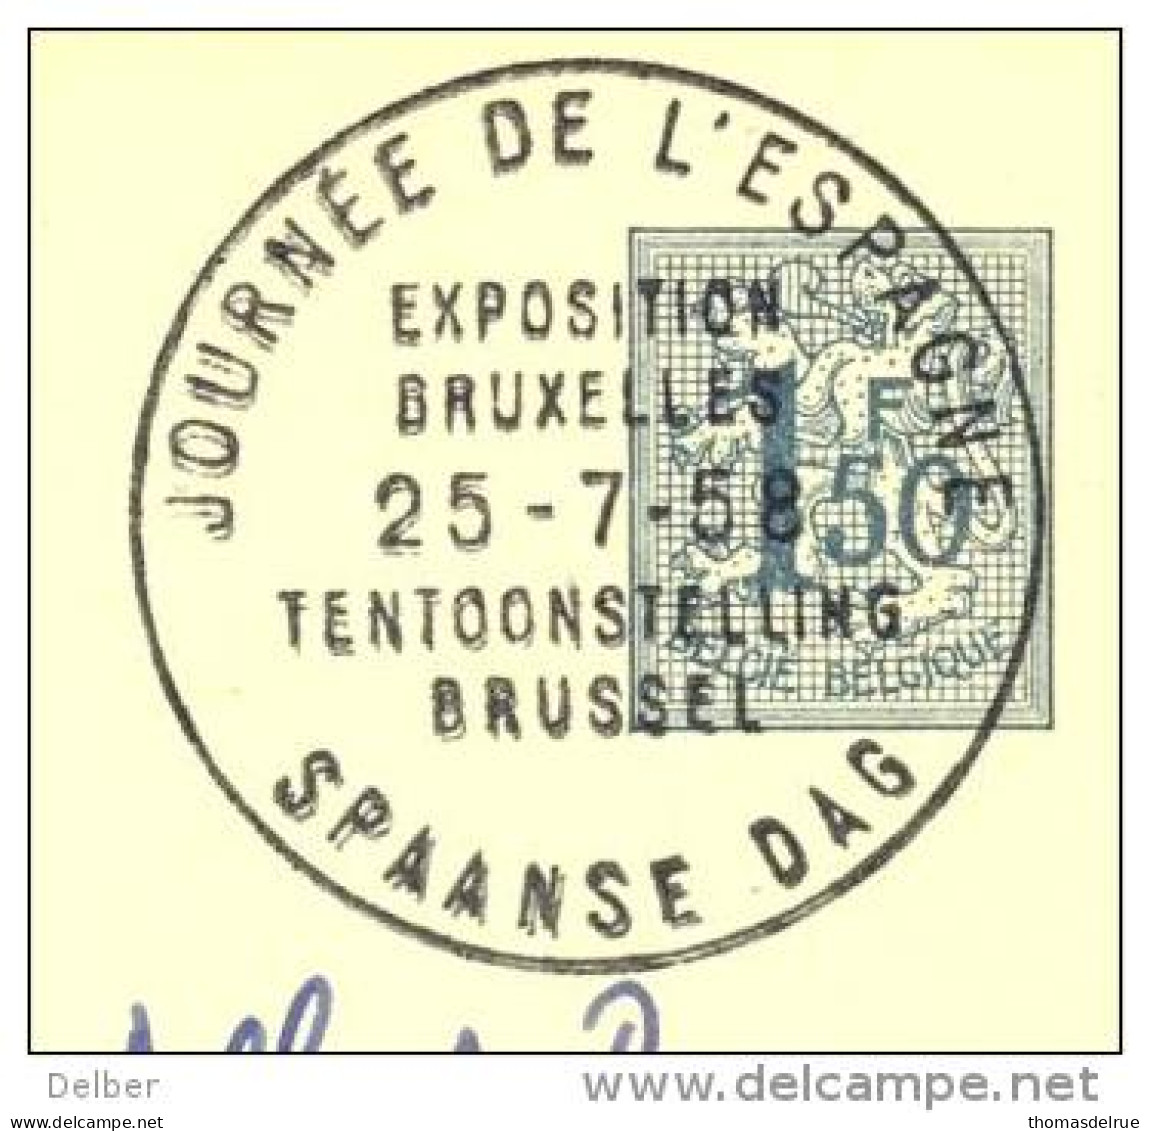 _Q032: JOURNEE DE L'ESPAGNE 25-7-58... SPAANSE DAG... - 1958 – Bruxelles (Belgique)